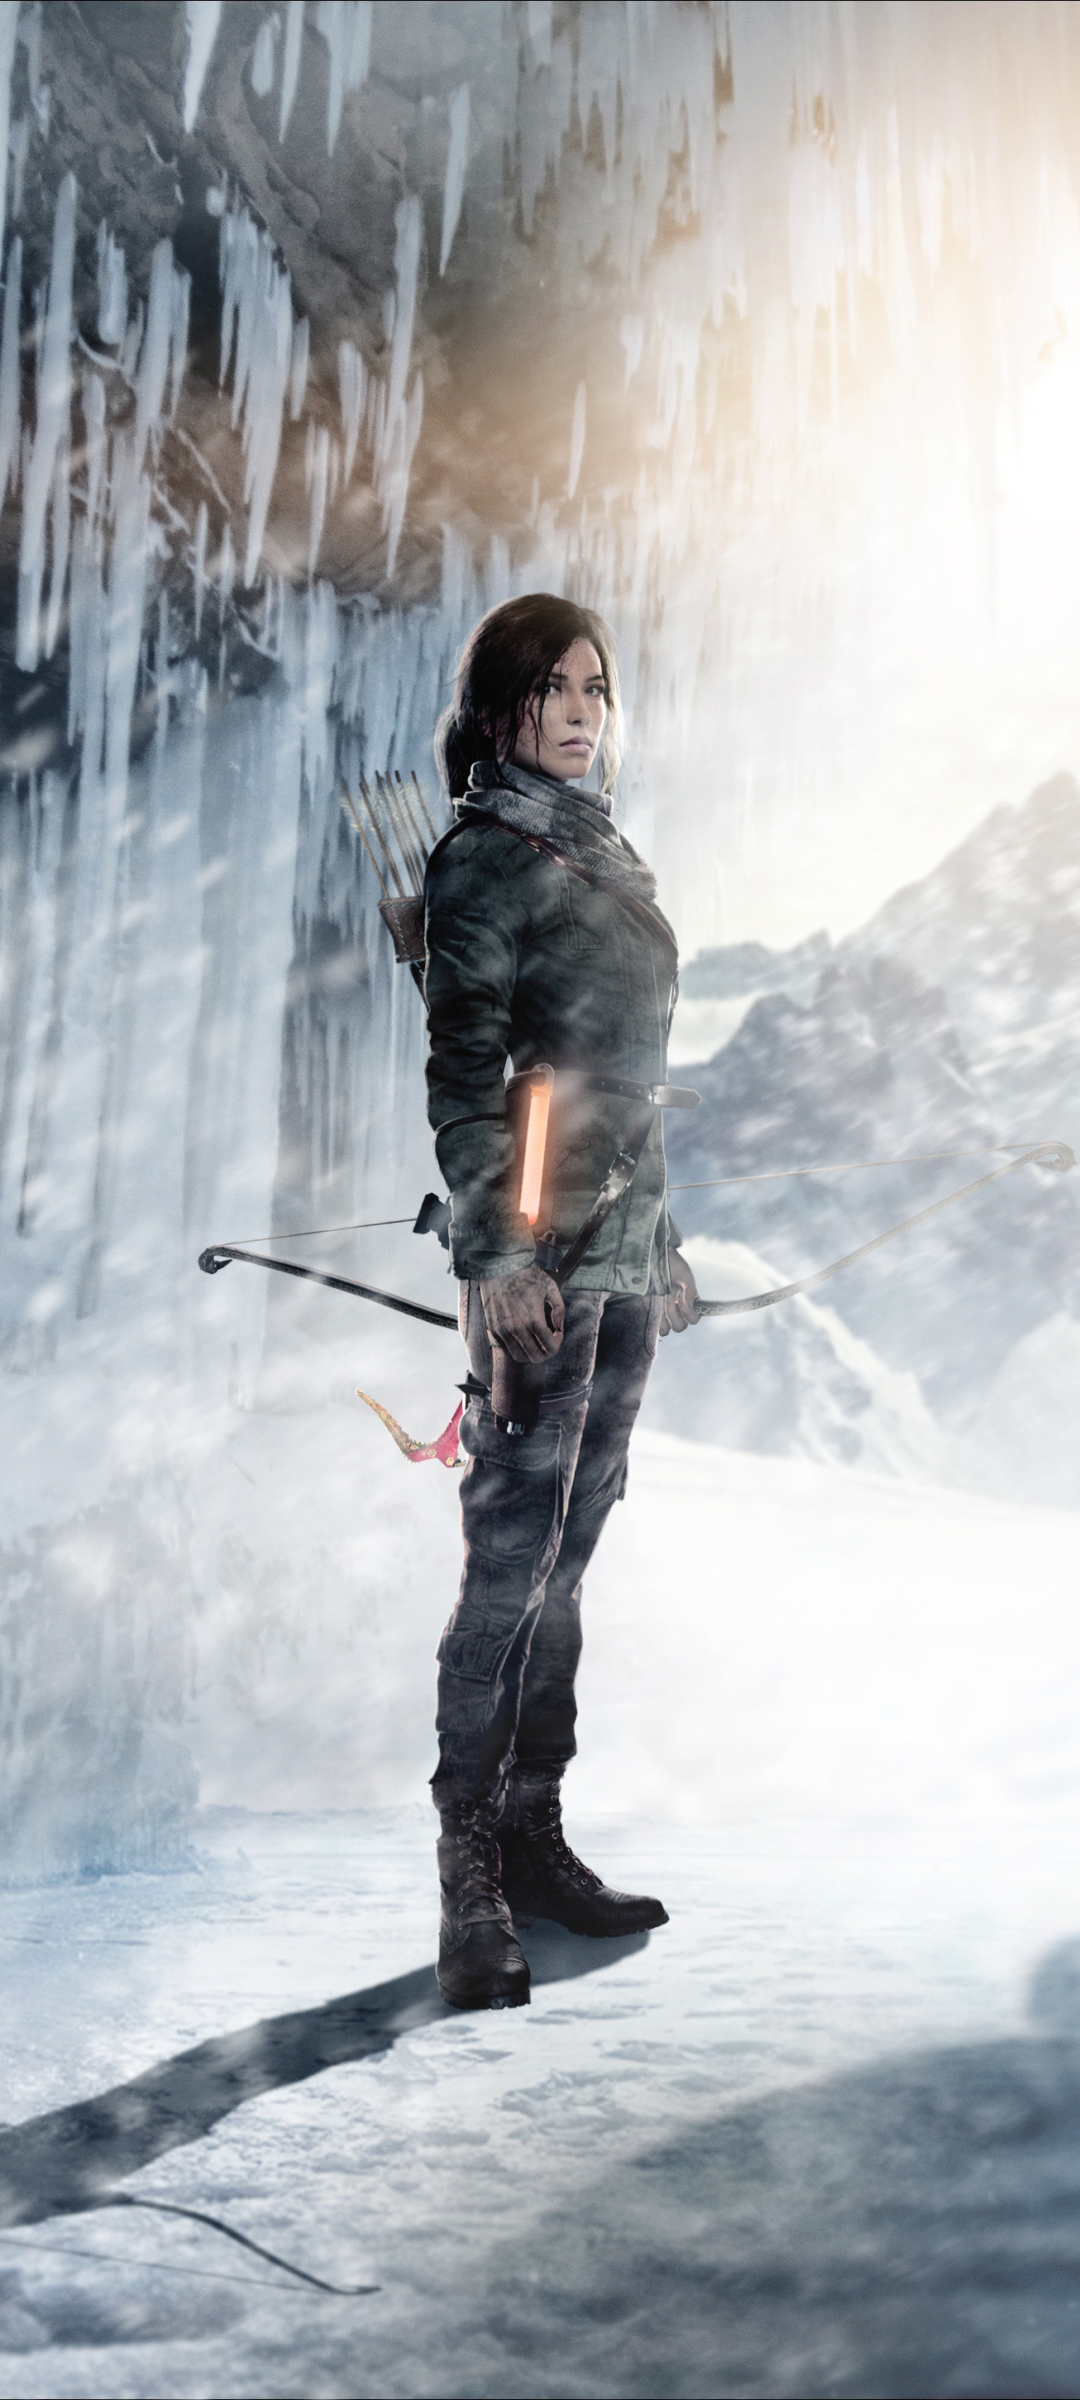 Descarga gratuita de fondo de pantalla para móvil de Invierno, Tomb Raider, Videojuego, Mujer Guerrera, Lara Croft, Rise Of The Tomb Raider.